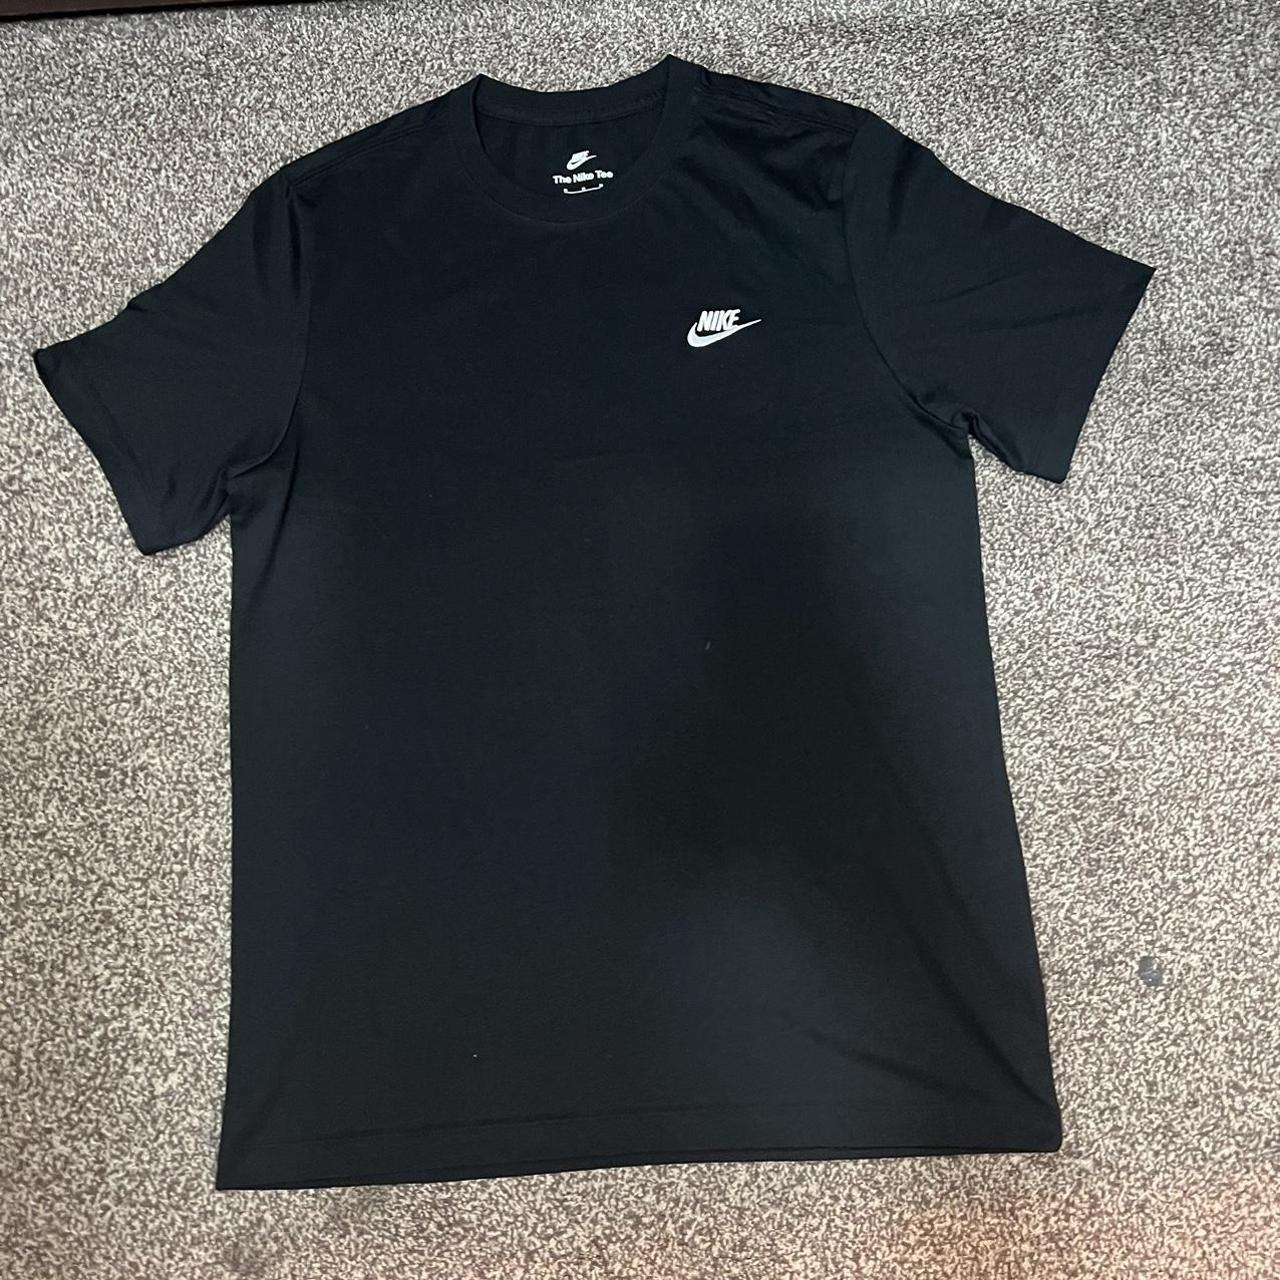 Black Nike Tshirt Brand New (no tags) Size... - Depop